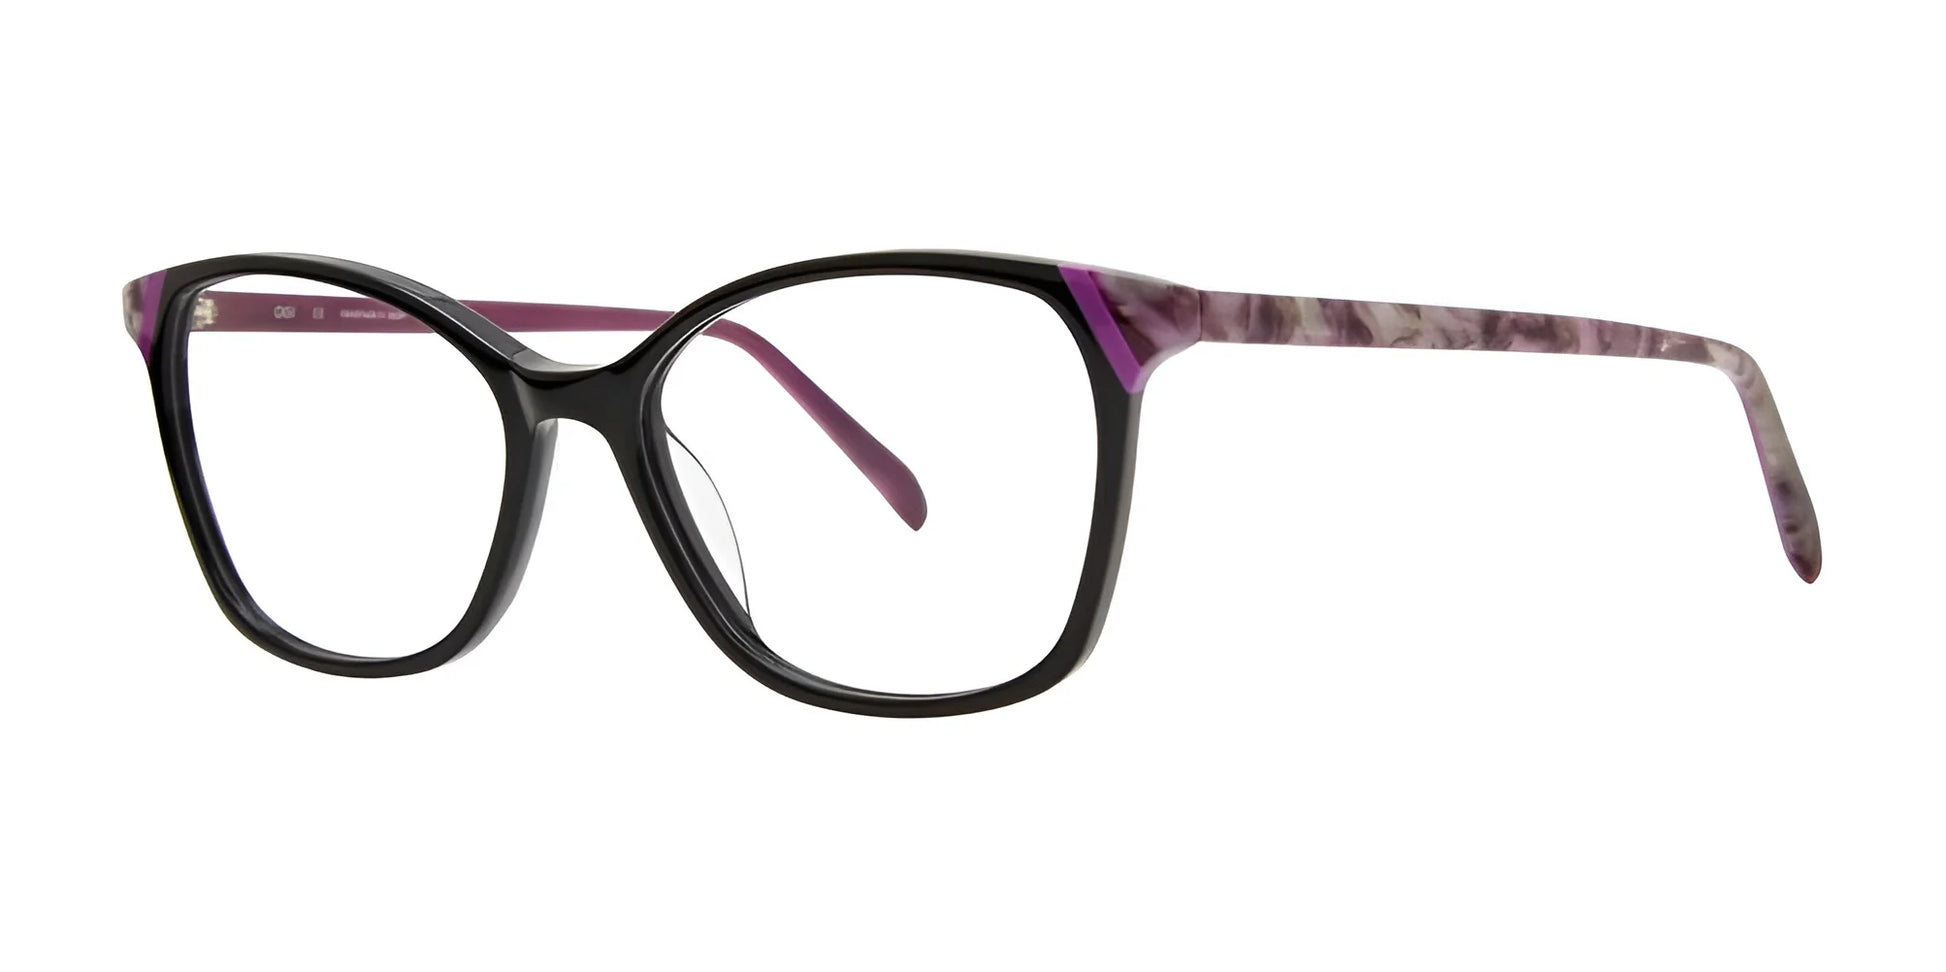 OGI SWIMSUIT WINTER Eyeglasses Black Purple Garnet Tortoise